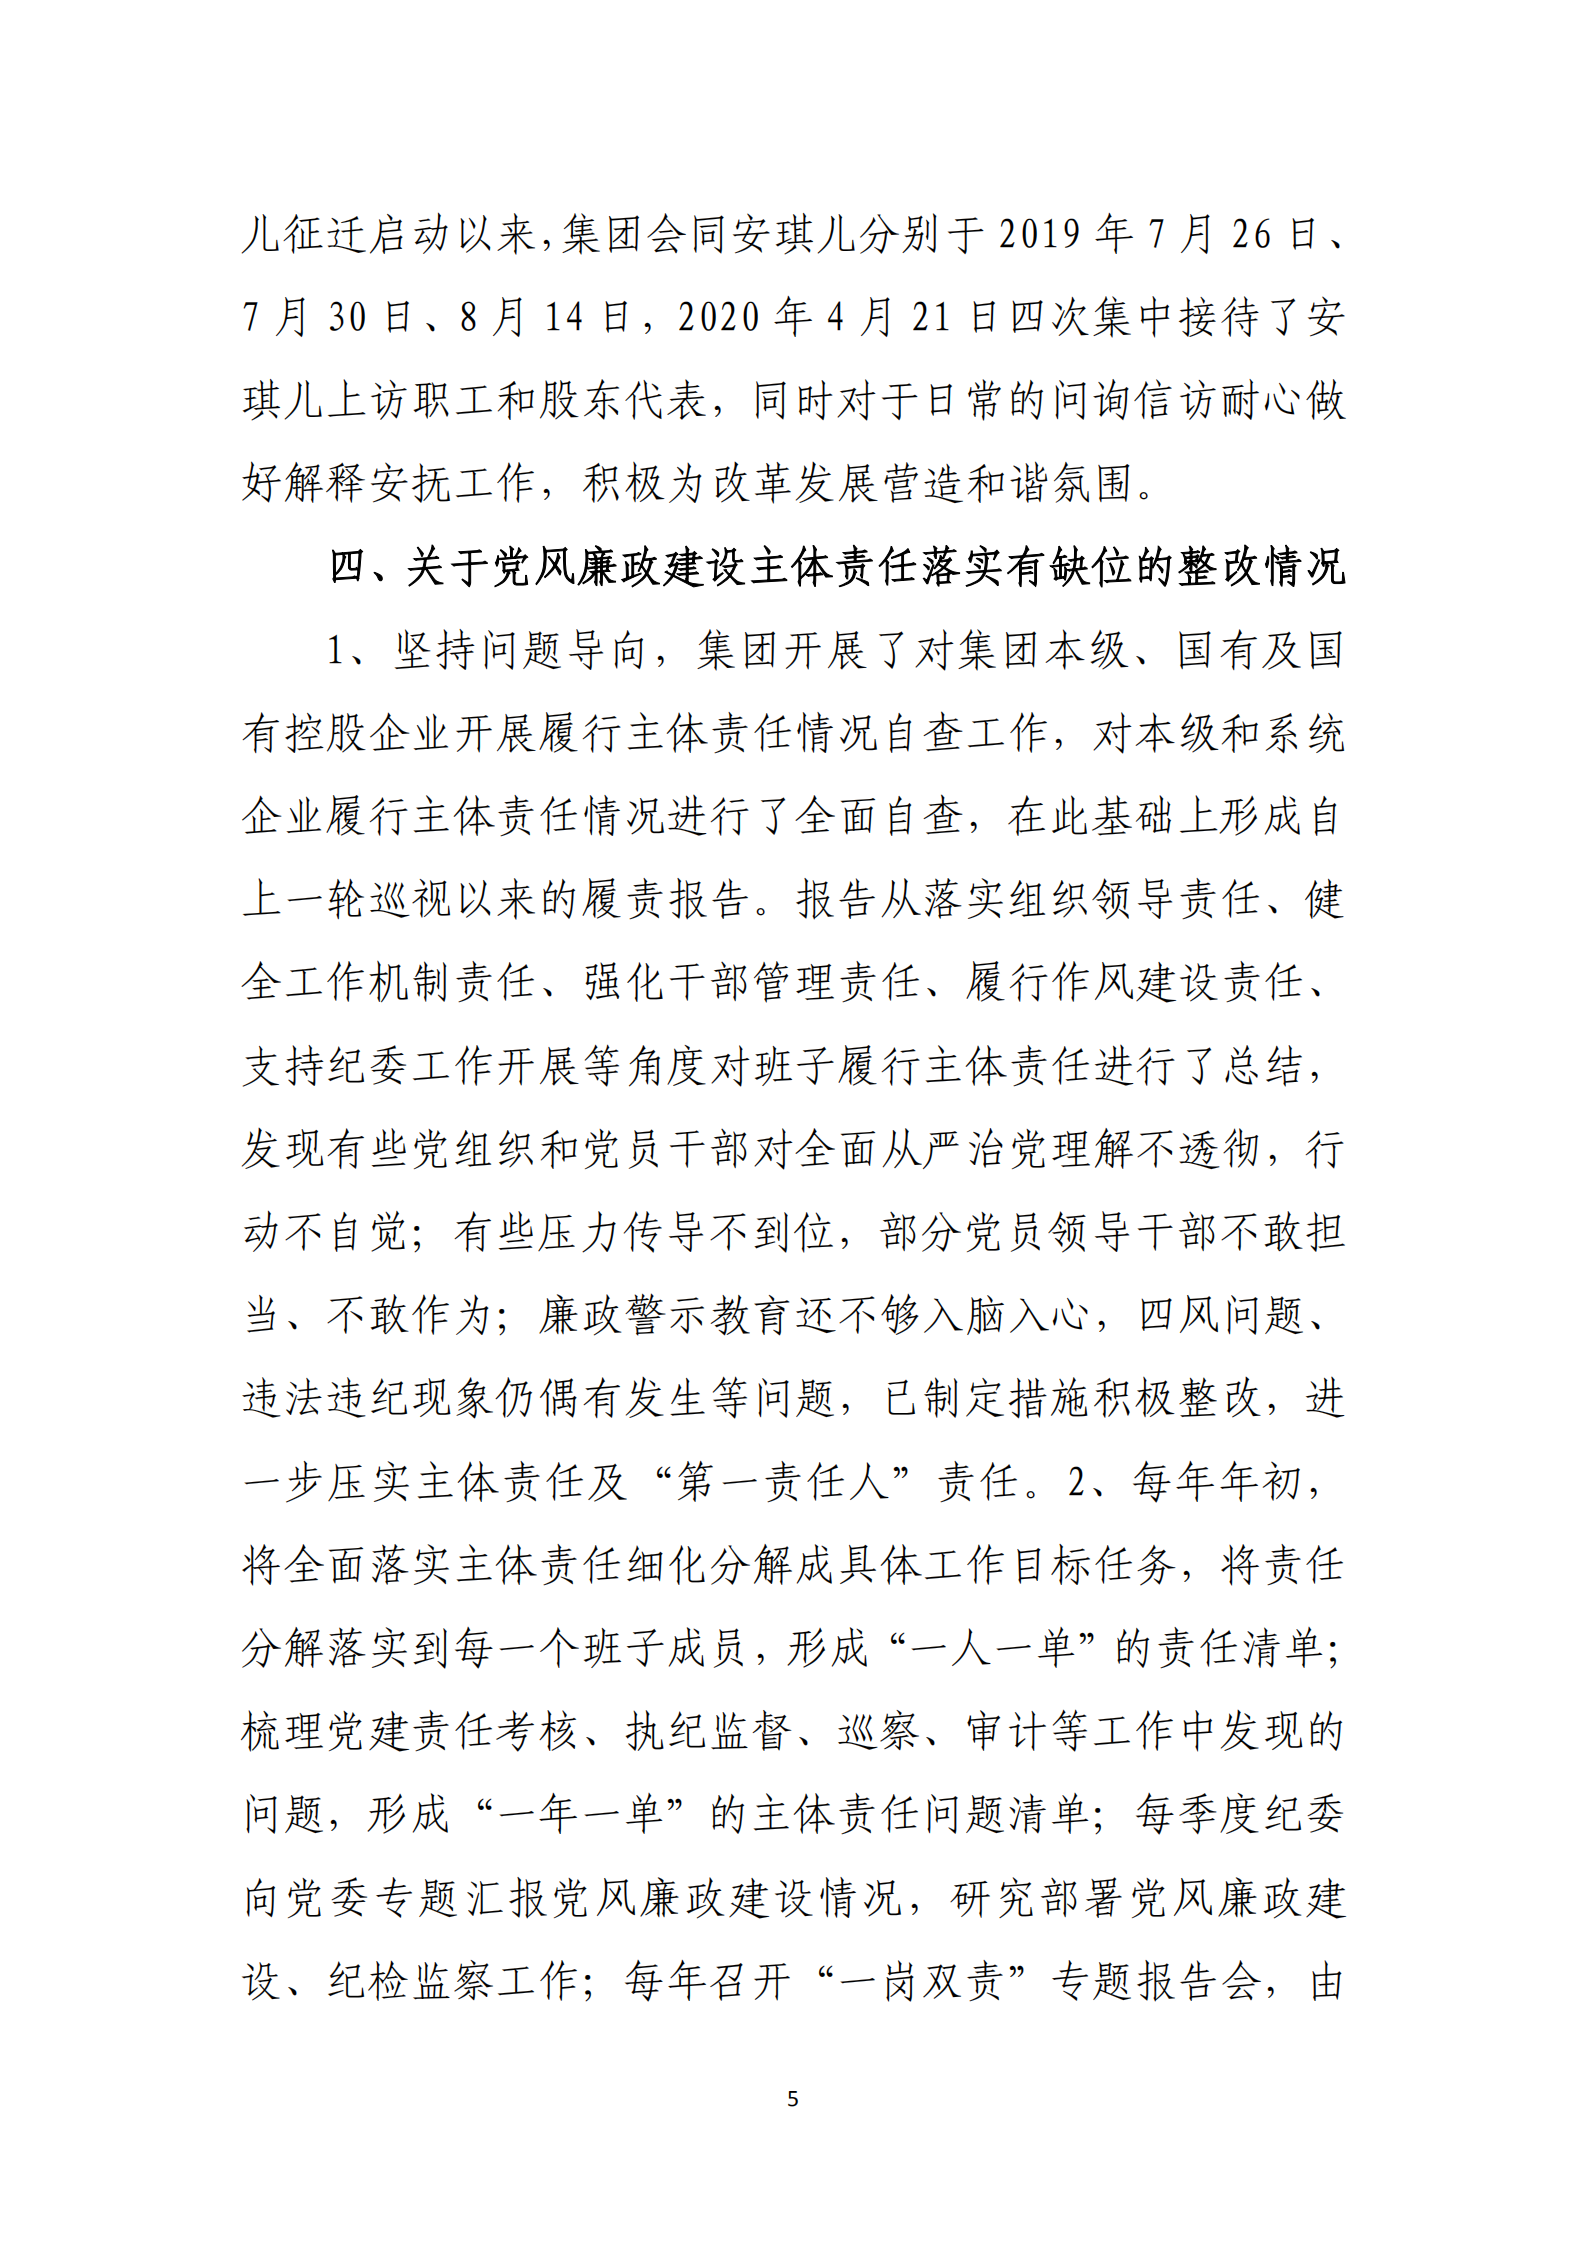 博乐体育网页【中国】有限公司党委关于巡察整改情况的通报_04.png